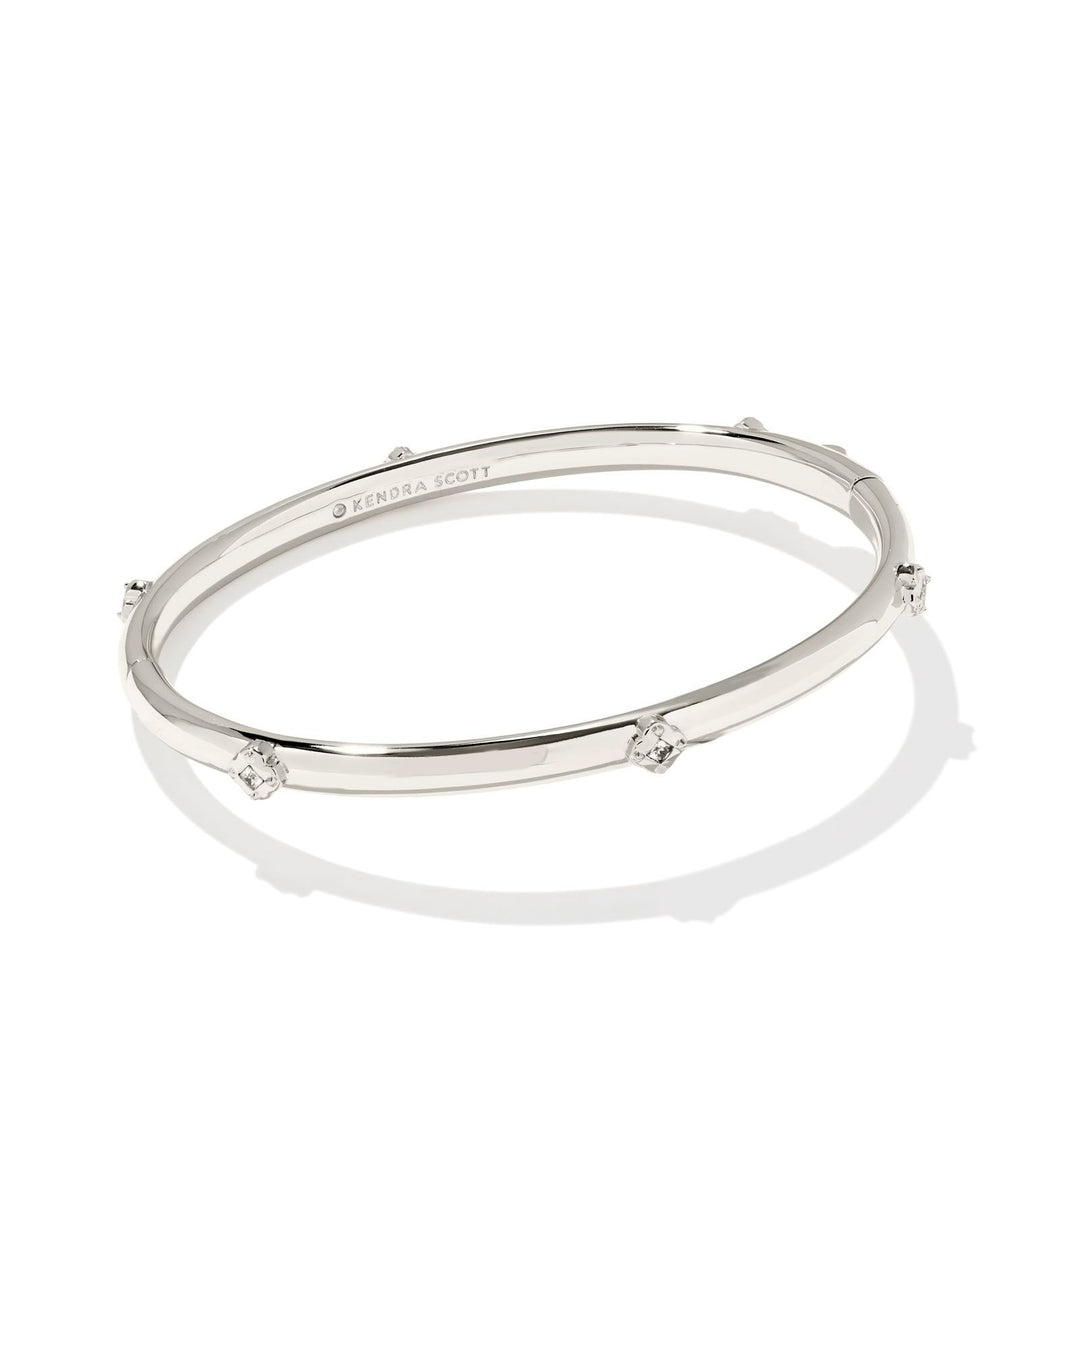 Kendra Scott Joelle Bangle Bracelet In Silver (M/L)